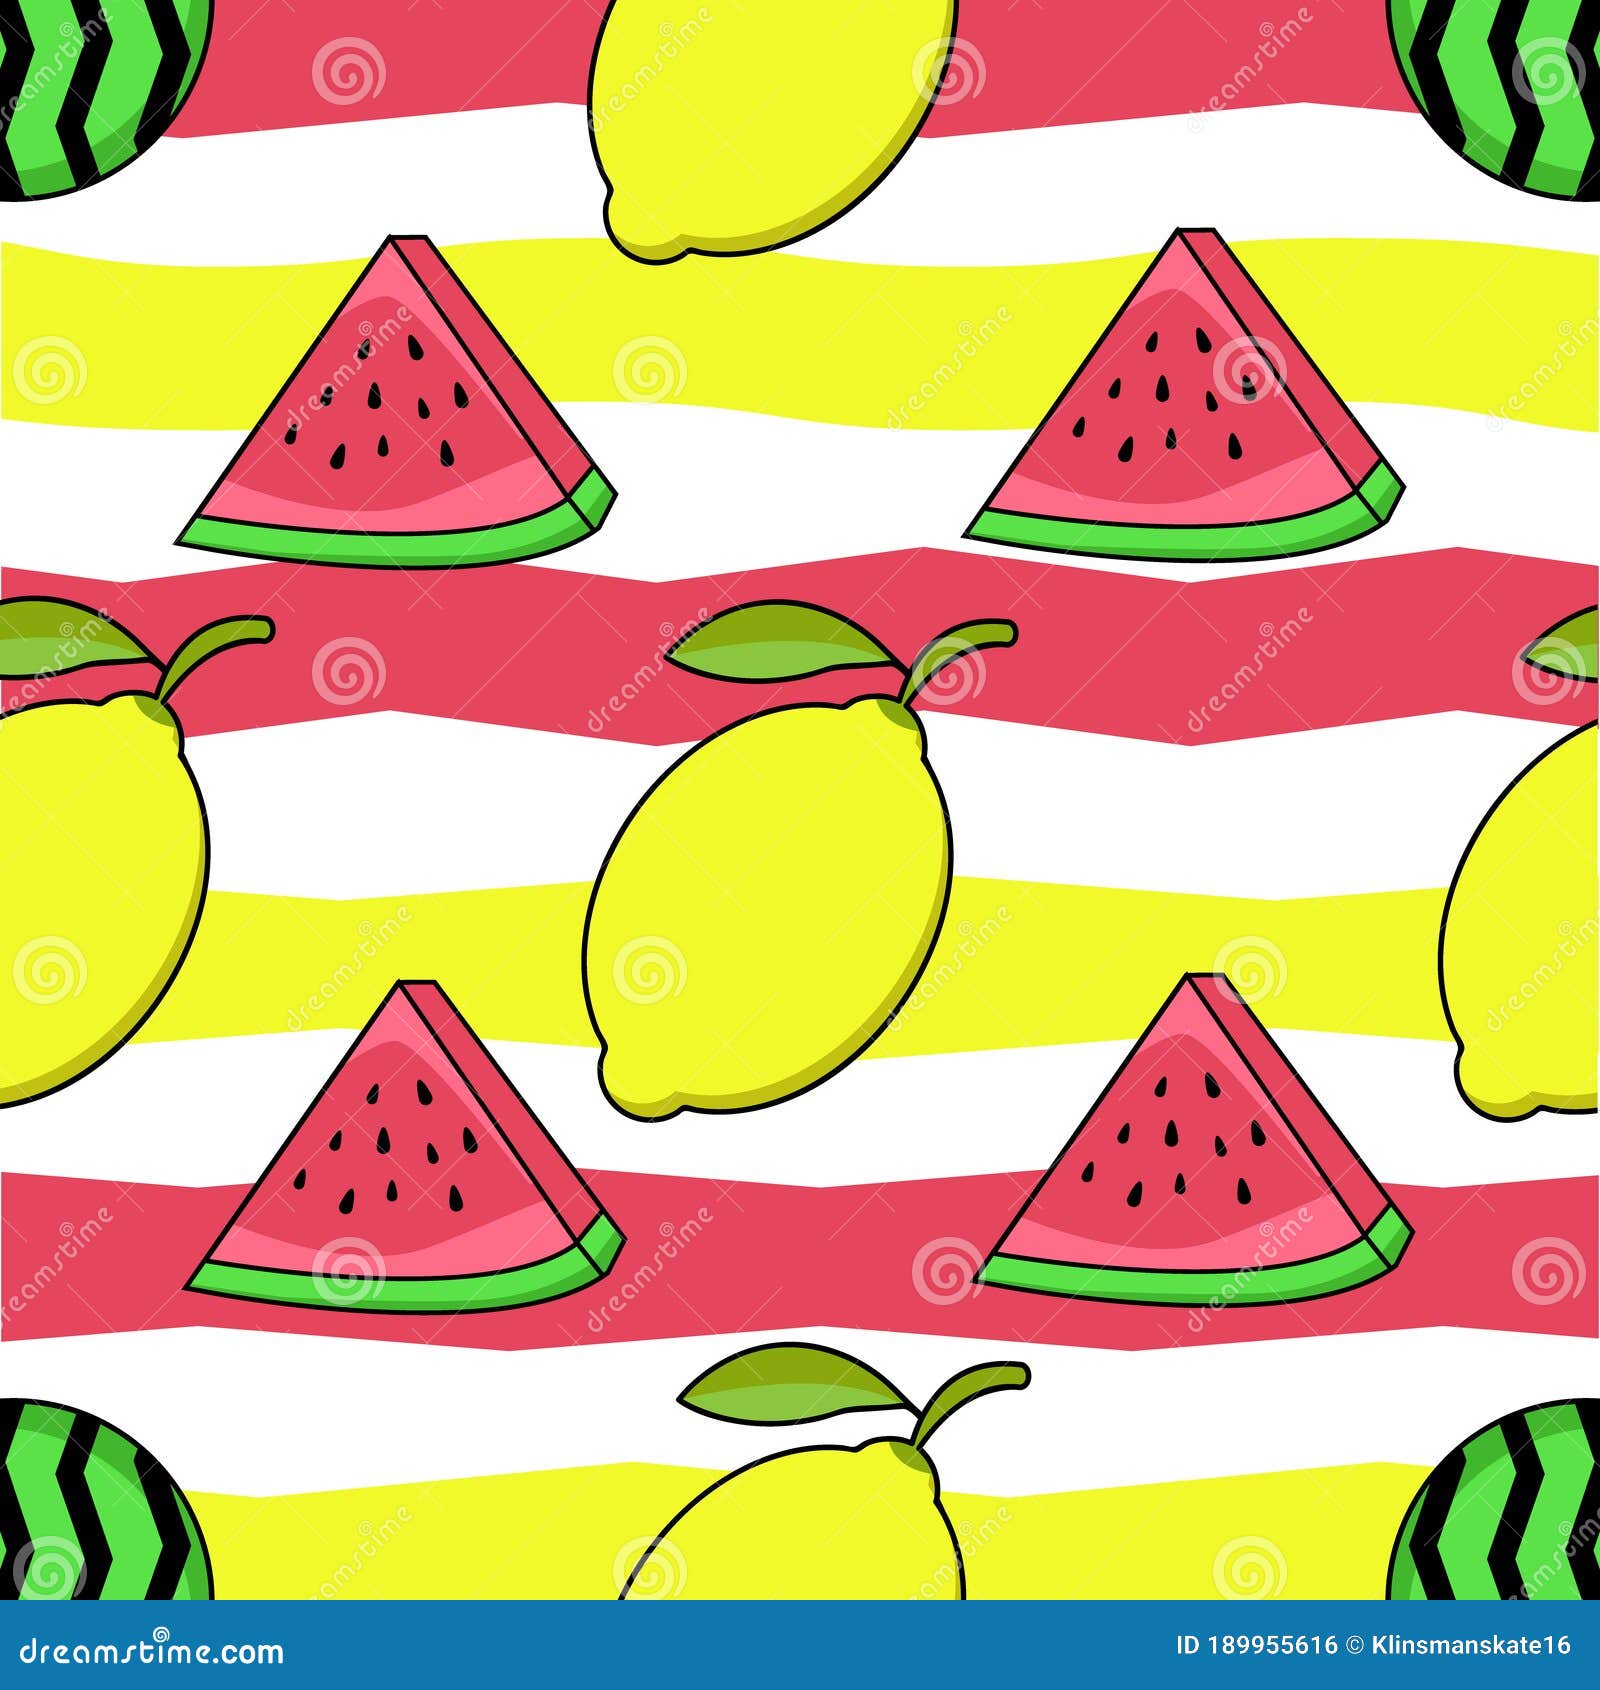 手绘西瓜和柠檬清凉一夏免费下载_插画图片(7087像素)-千图网